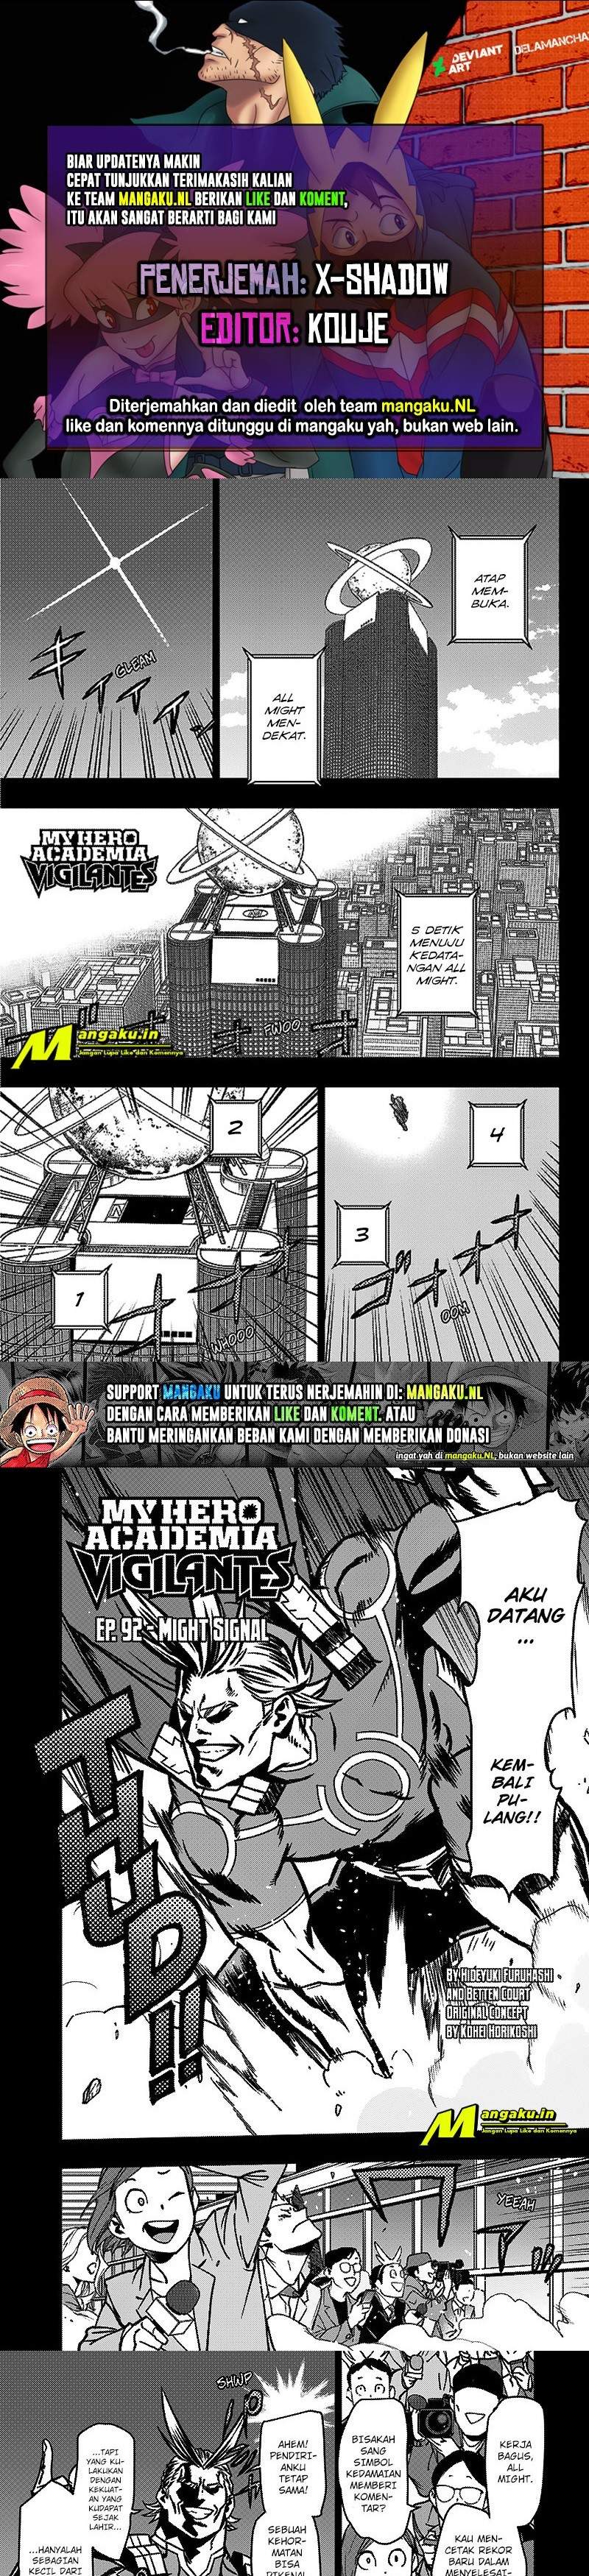 Vigilante: Boku no Hero Academia Illegals Chapter 92